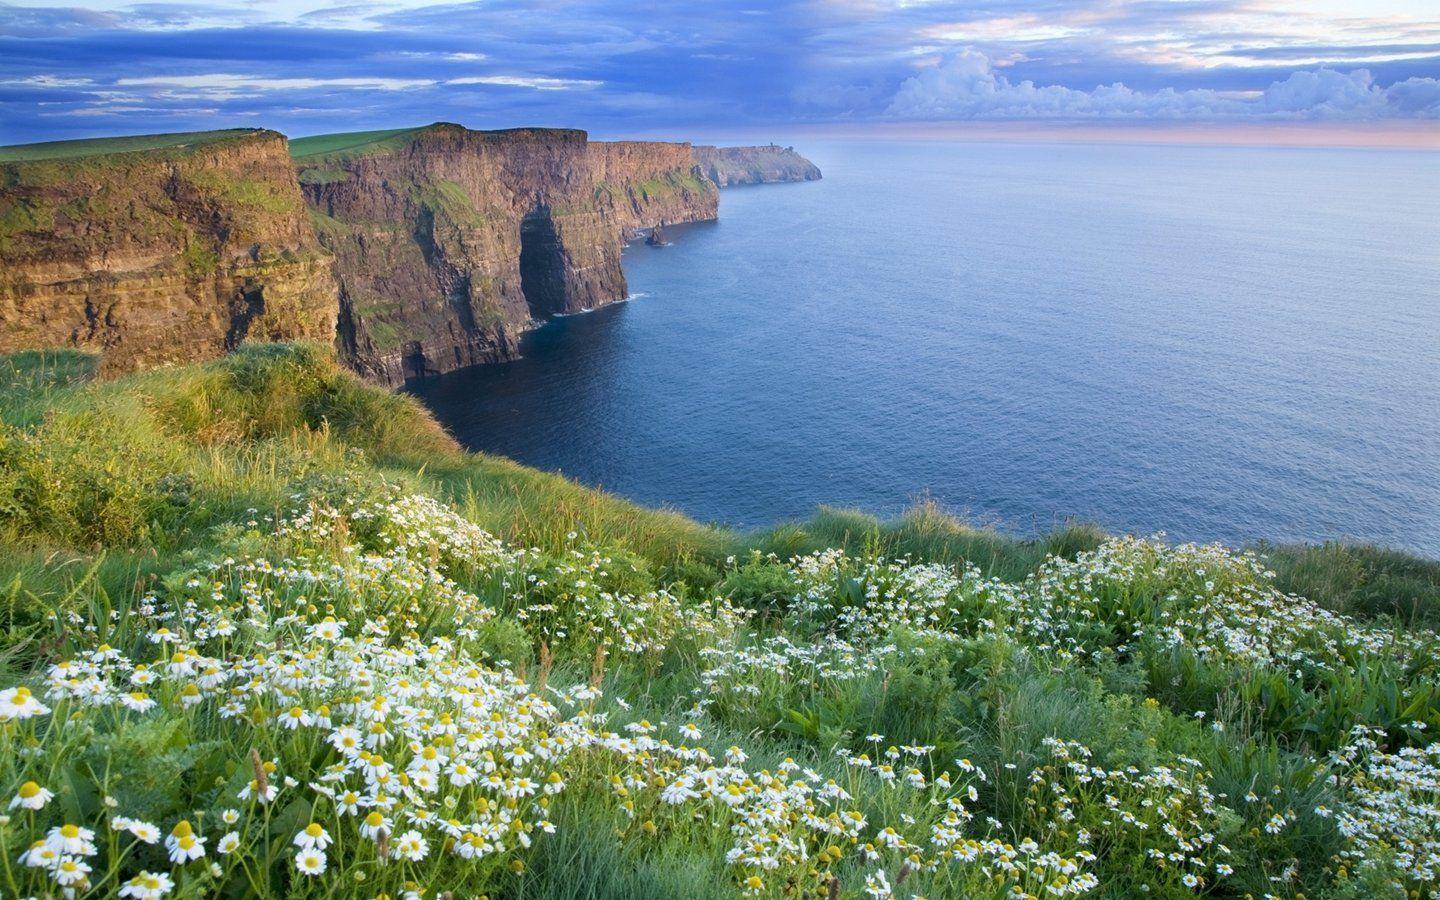  Irland Hintergrundbild 1440x900. Ireland Landscape Wallpaper Free Ireland Landscape Background